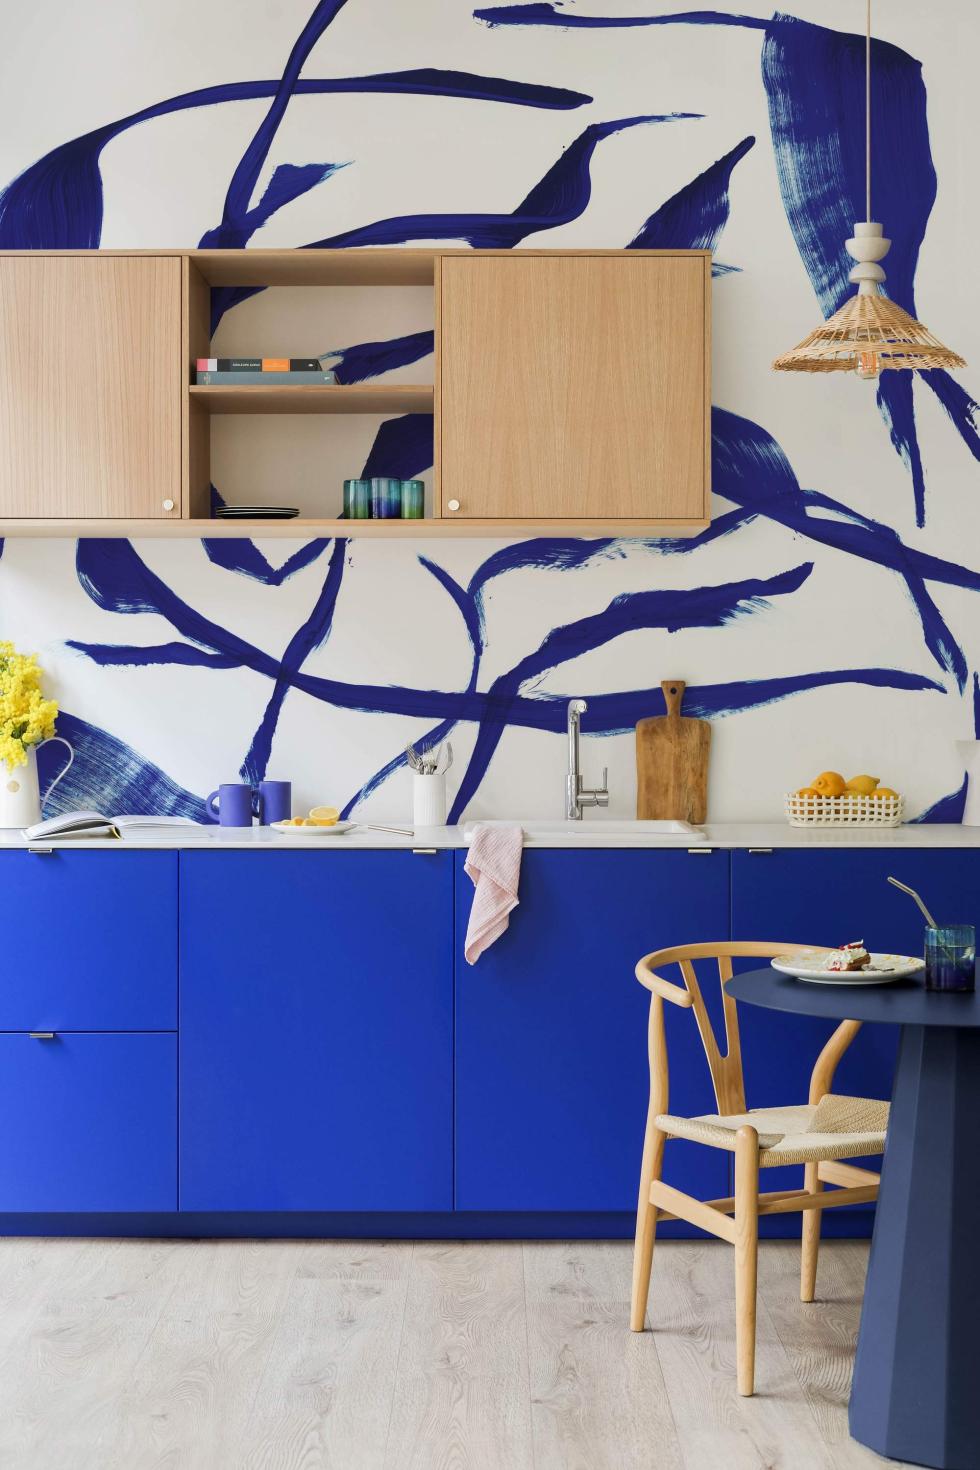 Küche in Electric Blau und Eiche Natur mit blauer Tapete.